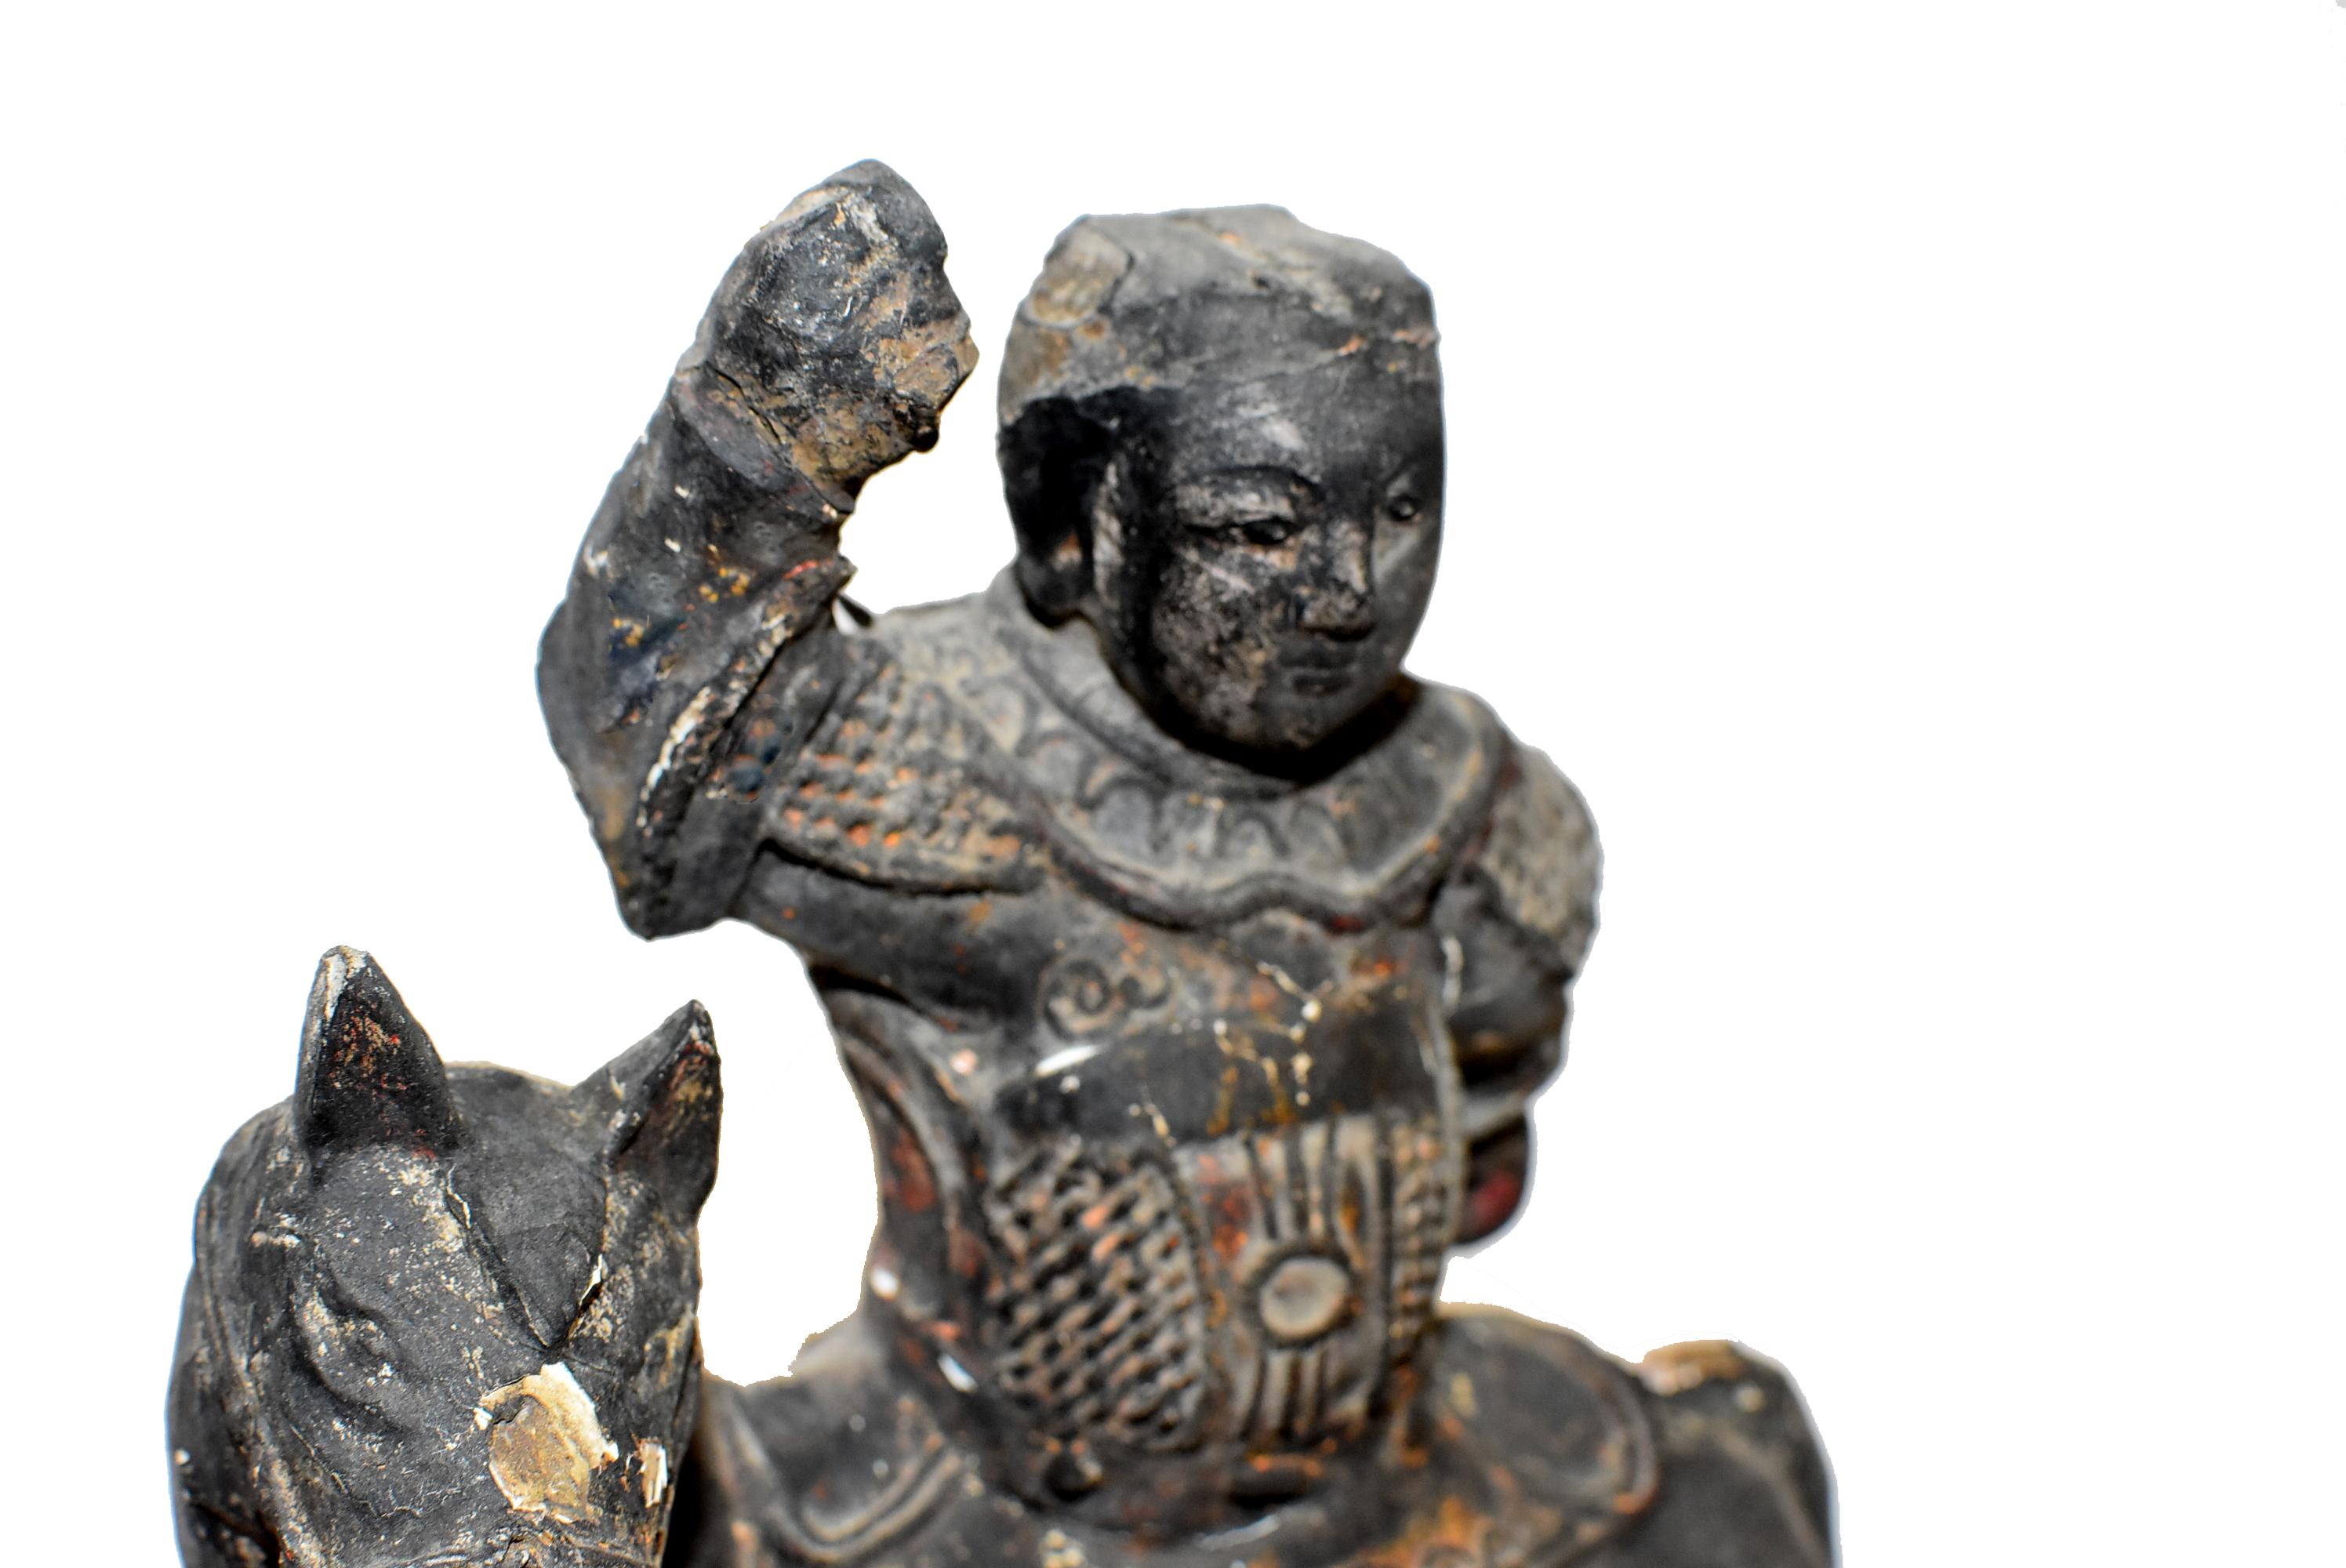 Statue originale en bois massif du XVIIIe siècle, sculptée à la main, représentant un jeune guerrier Ming à cheval. Le guerrier porte une armure complète et élaborée, avec un bouclier sous un grand collier circulaire et des épaulettes au-dessus